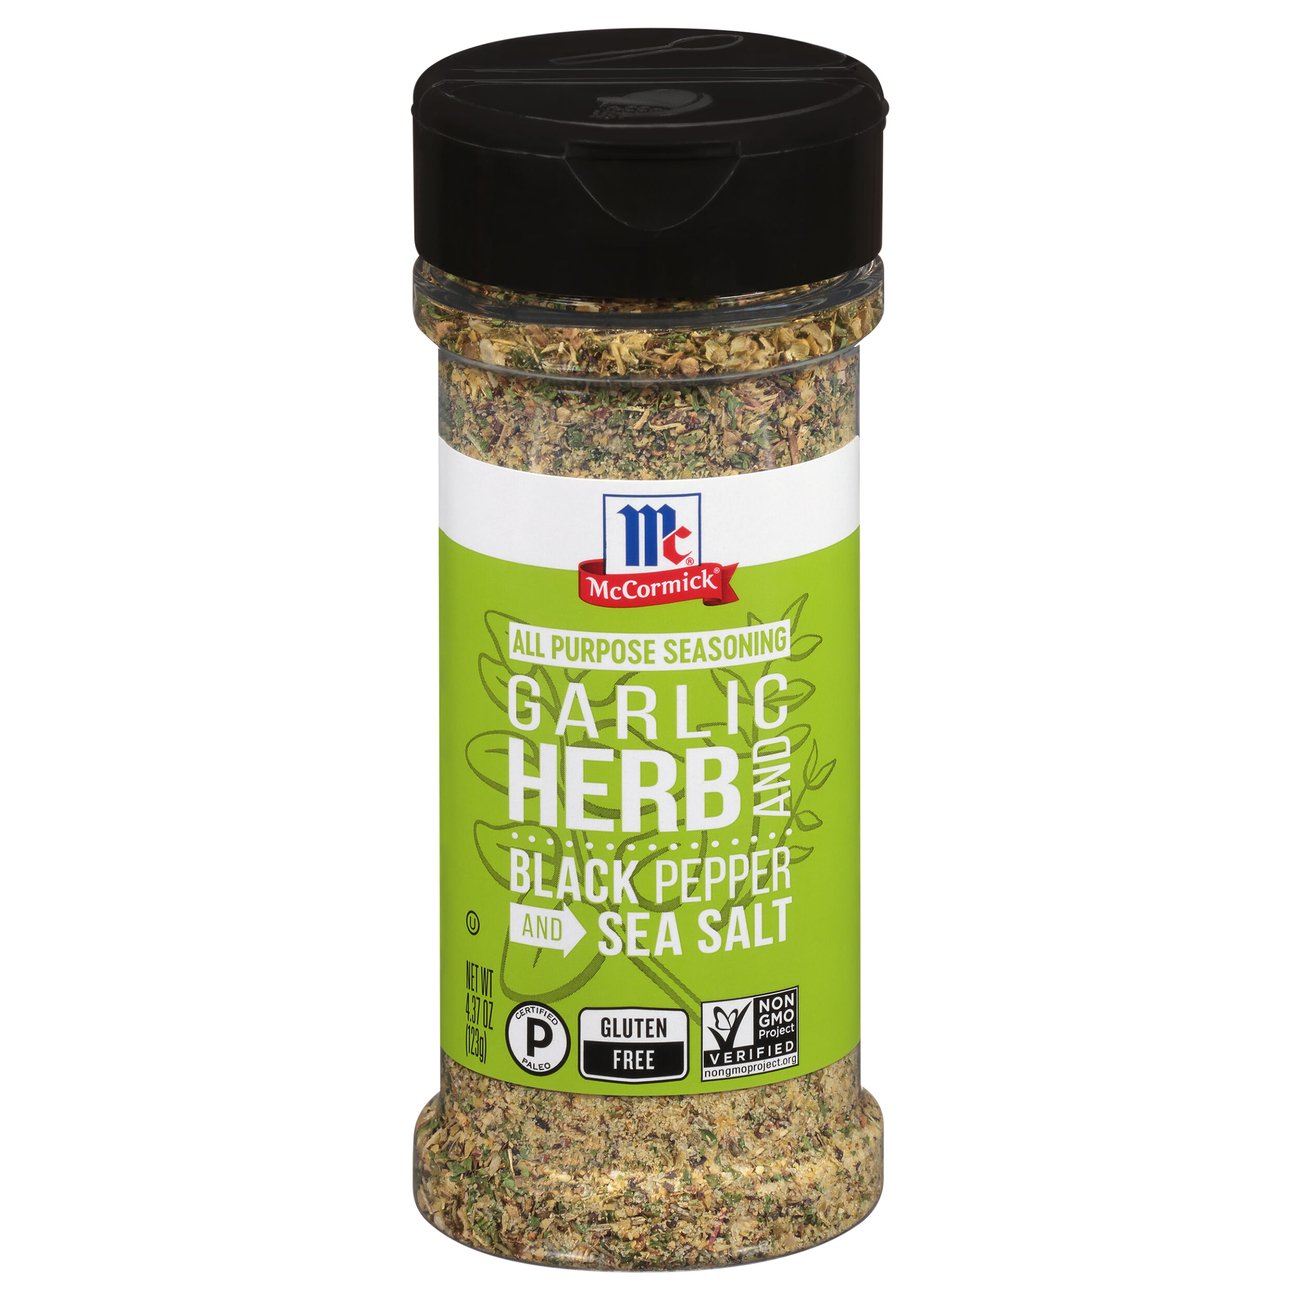 Image of Garlic herb